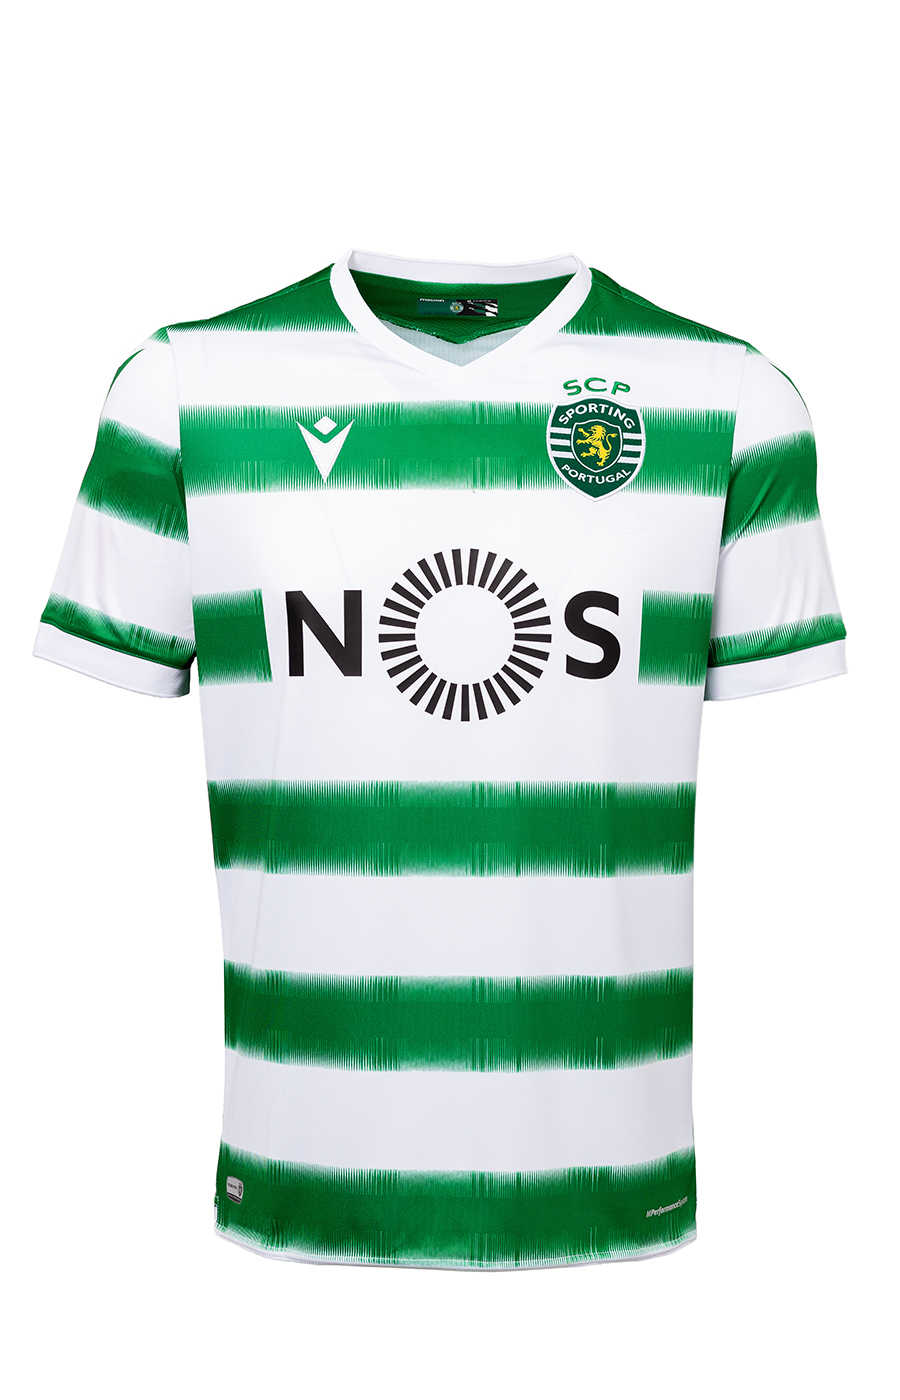 20/21 Sporting Lisbon Home Green&White Stripes Man Soccer Jersey, Cheap ...